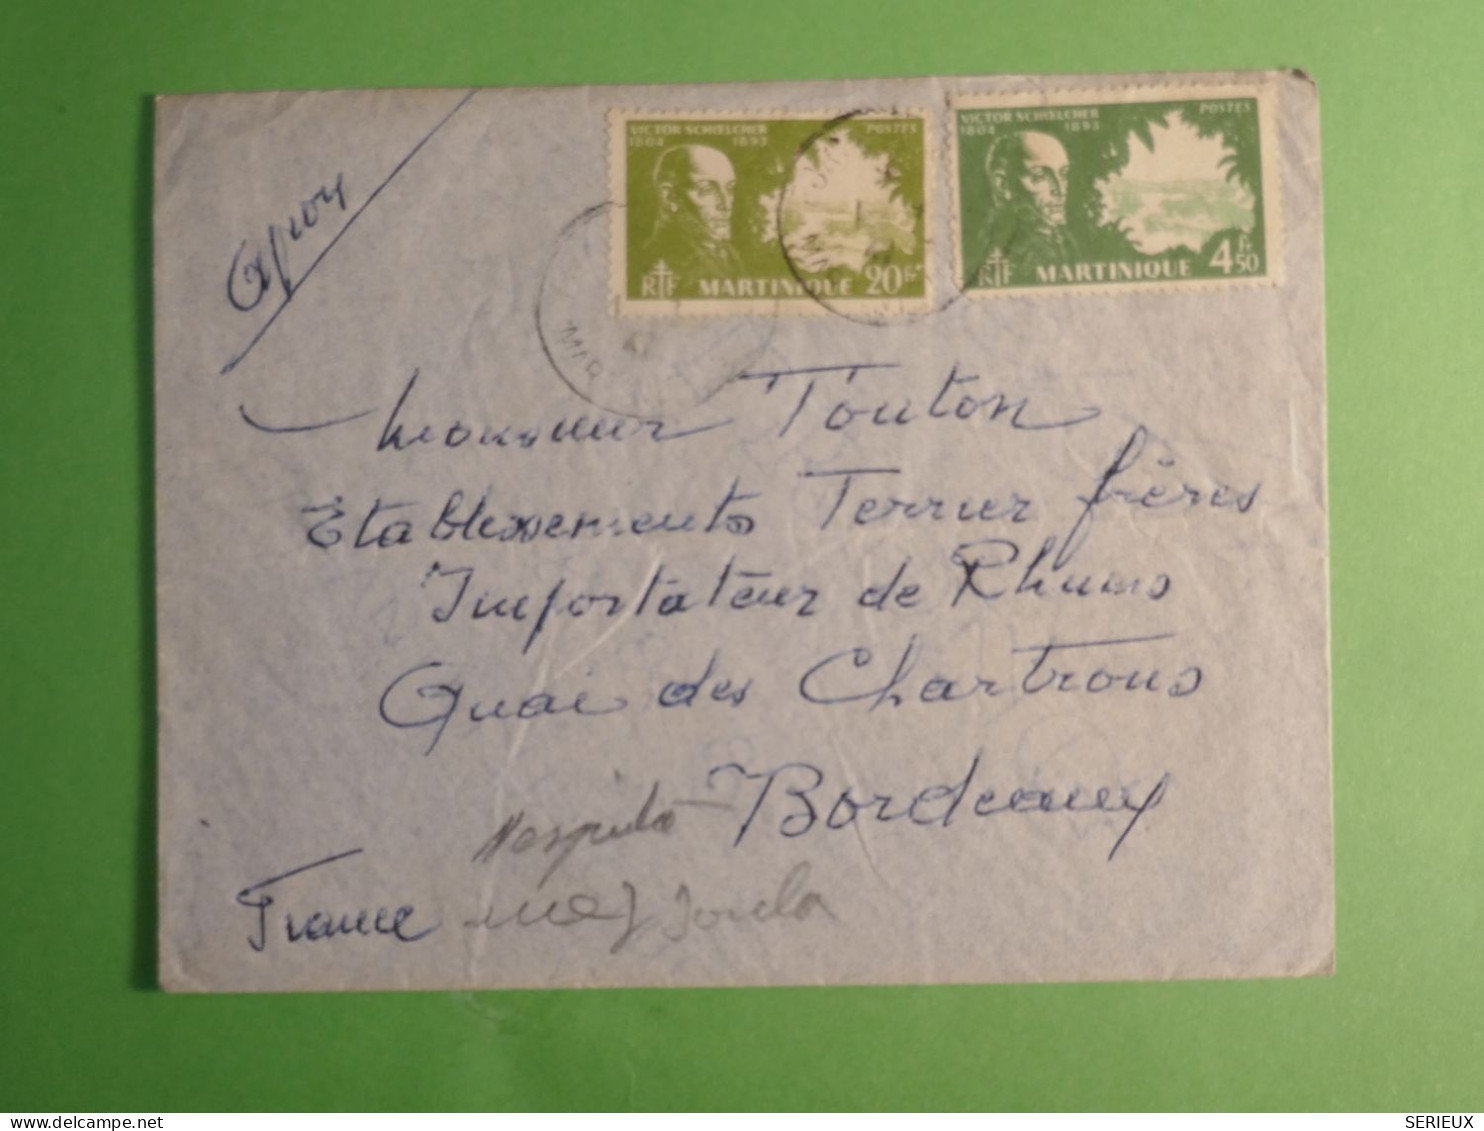 DN20 MARTINIQUE   LETTRE  1939   A  BORDEAUX FRANCE ++ AFF.   INTERESSANT+ ++++ - Briefe U. Dokumente